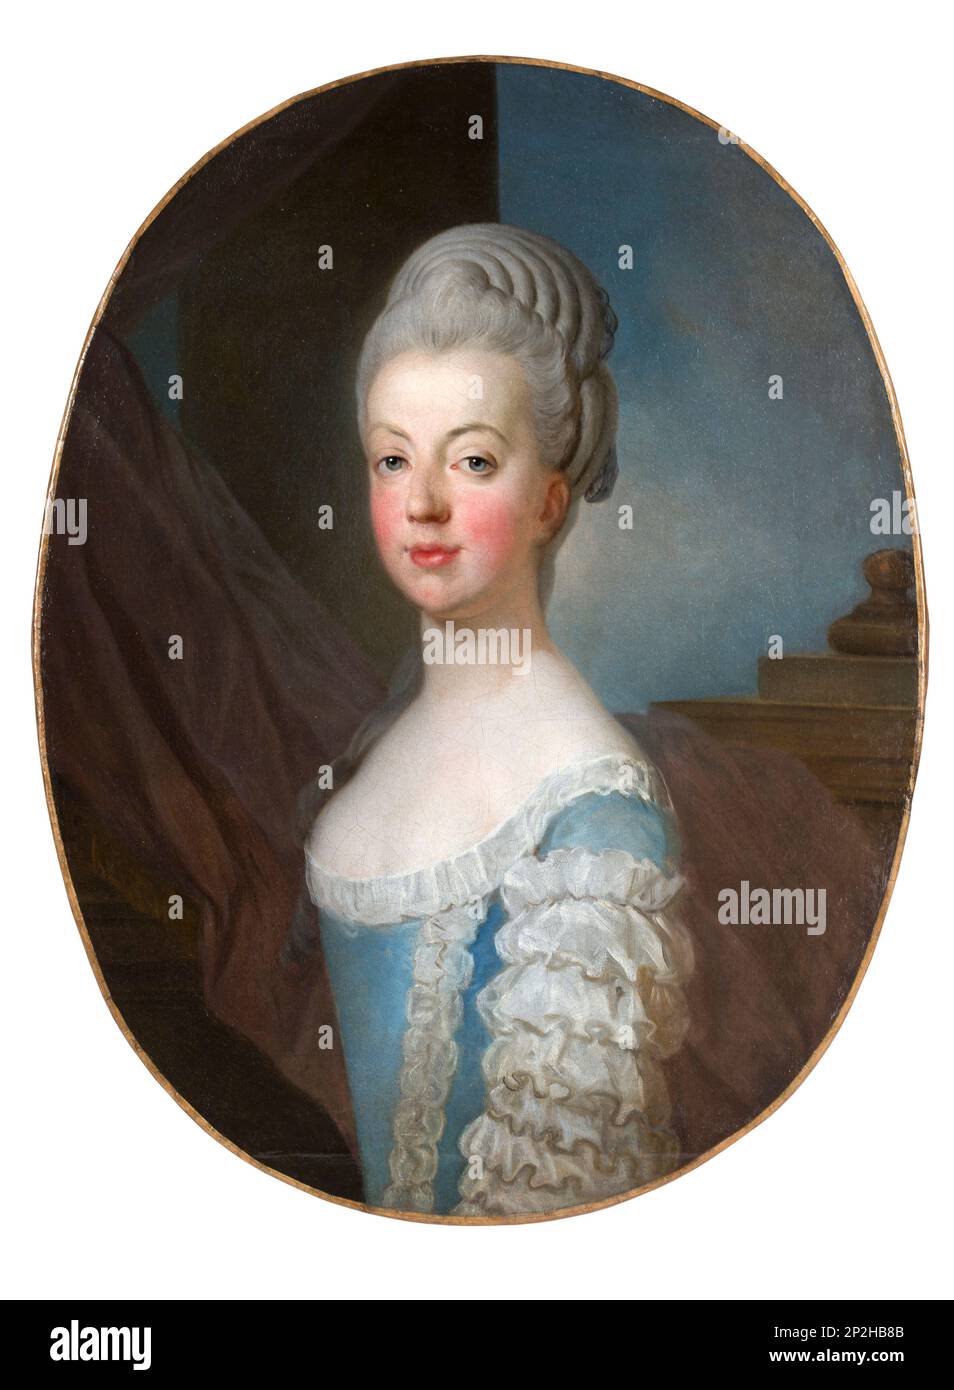 Portrait de l'archiduchesse Maria Antonia d'Autriche (1755-1793), la plus récente reine Marie-Antoinette de France, vers 1770. Collection privée. Banque D'Images